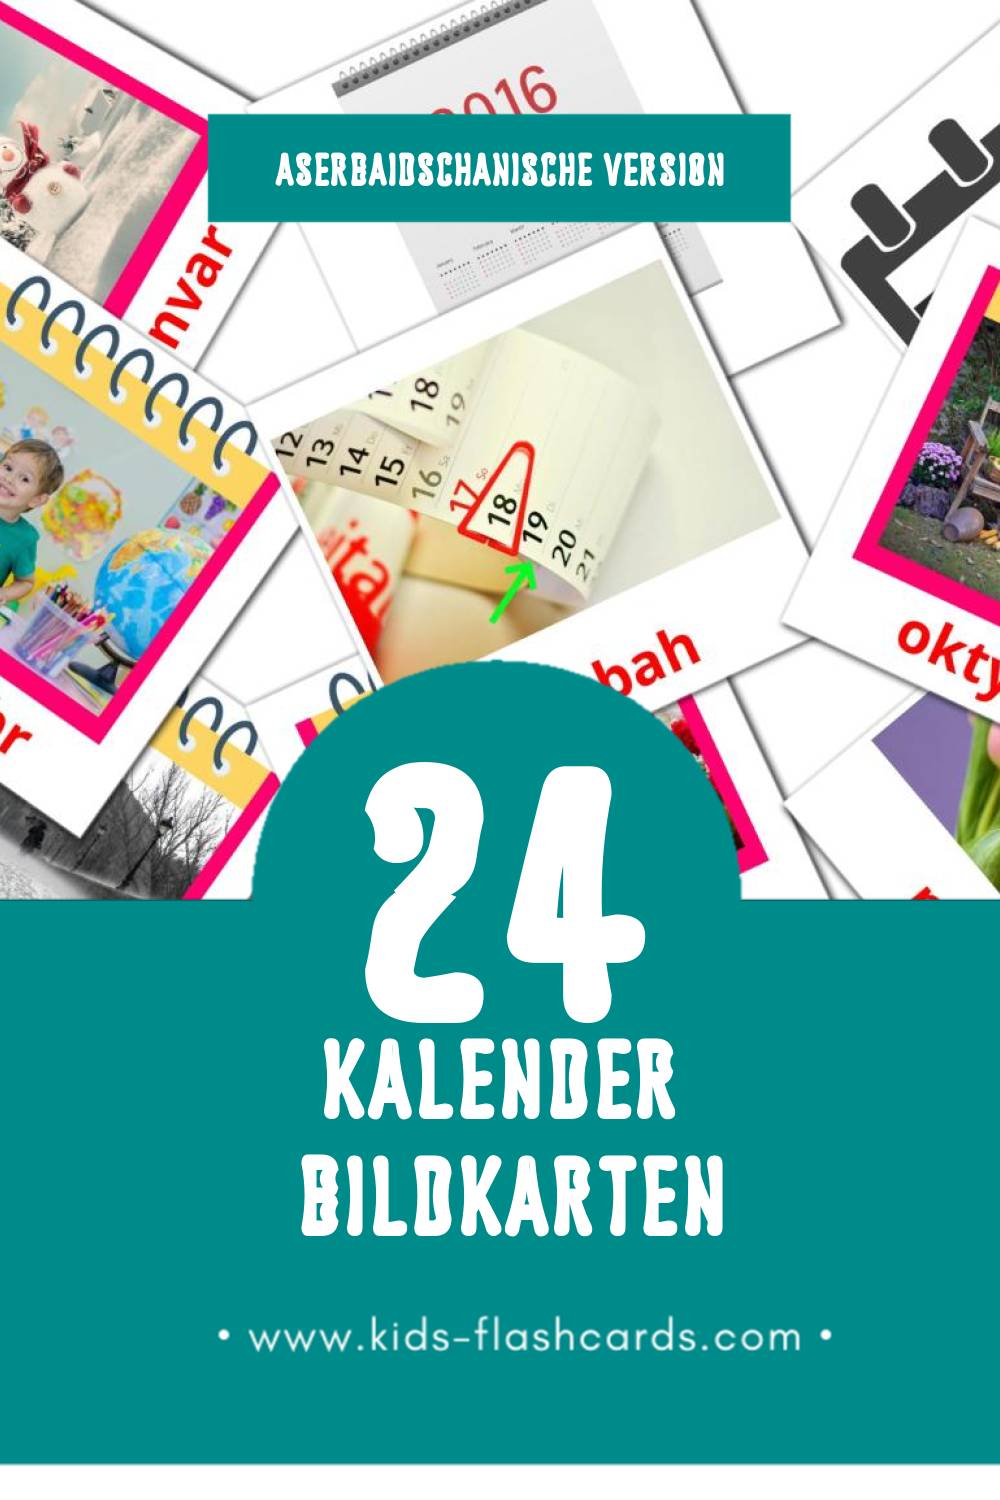 Visual Təqvim Flashcards für Kleinkinder (24 Karten in Aserbaidschanisch)